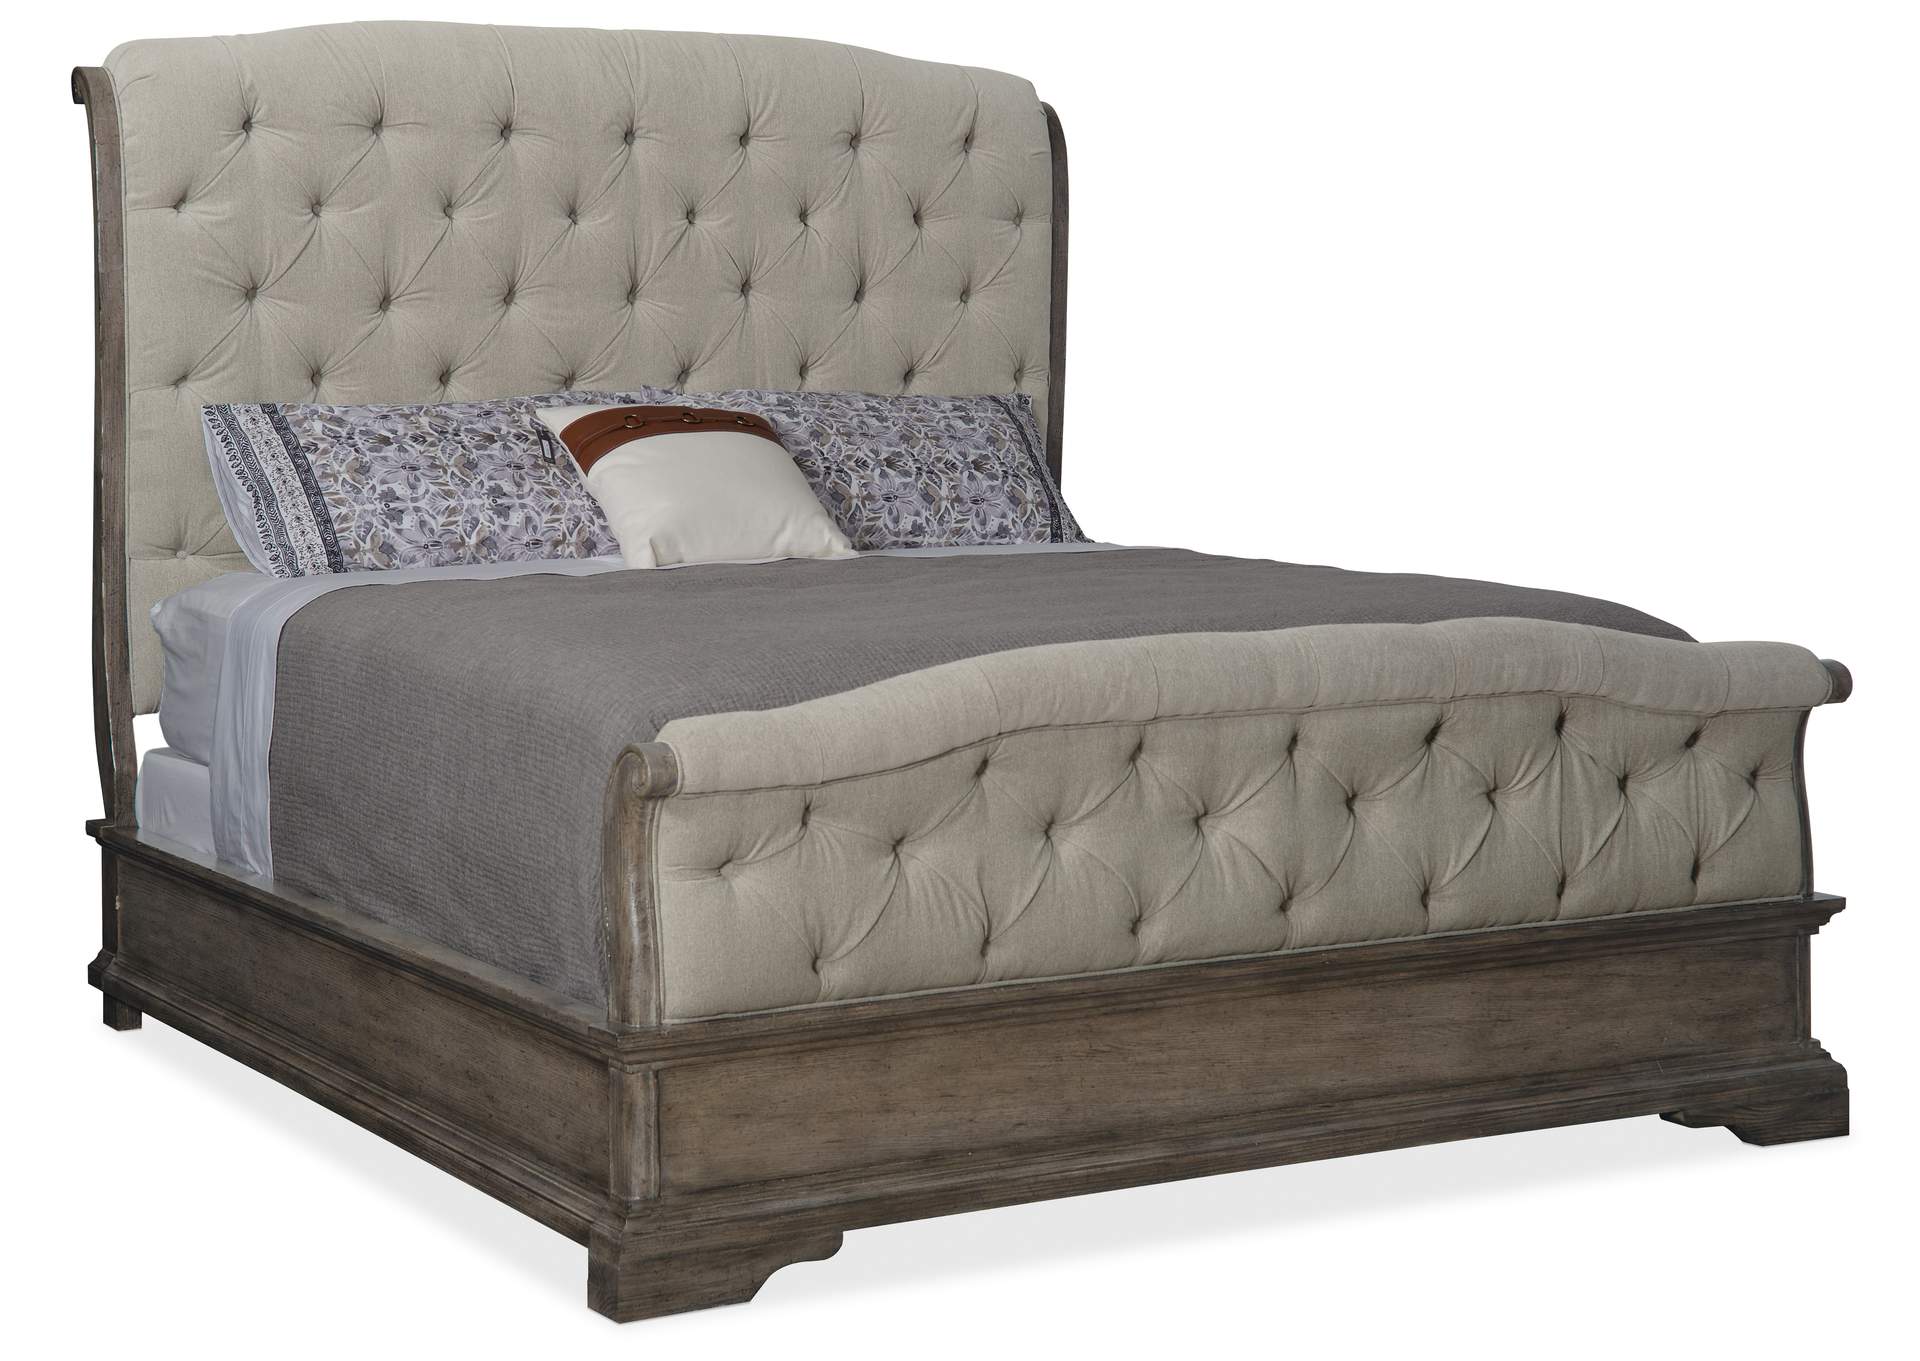 Woodlands Queen Upholstered Bed,Hooker Furniture